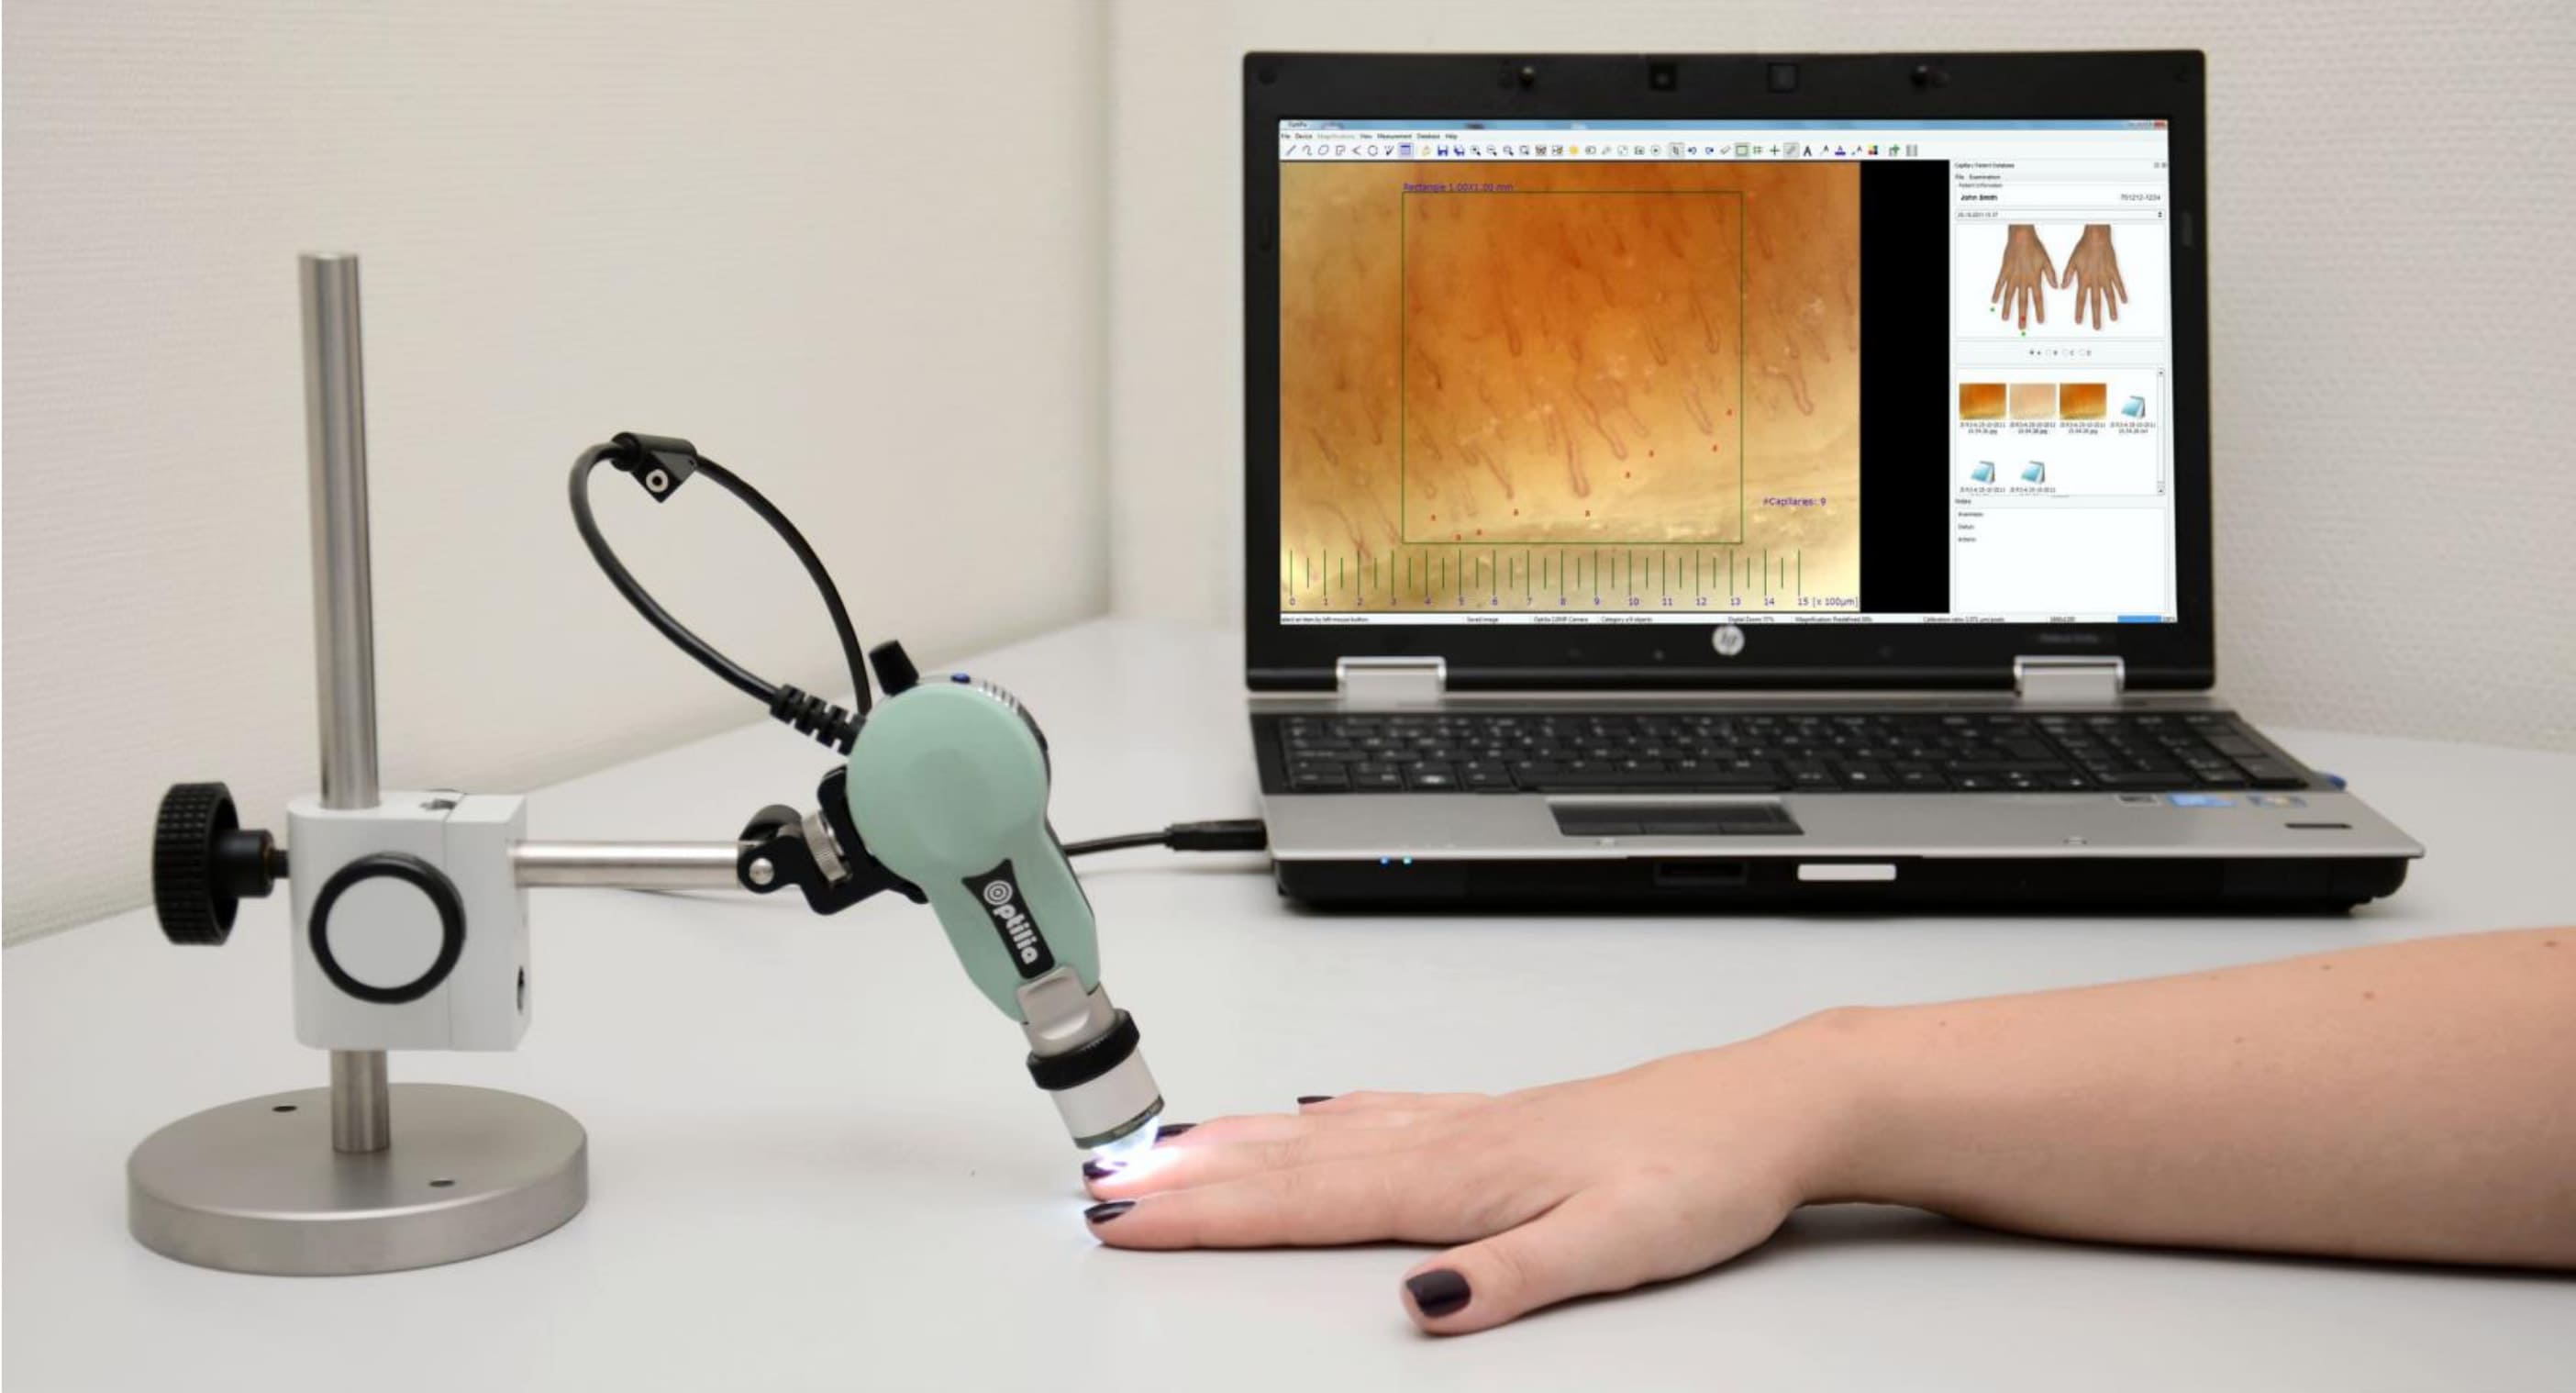 Procedimiento de capilaroscopia: se observan los capilares de la base de las uñas mediante un microscopio USB portátil conectado al ordenador